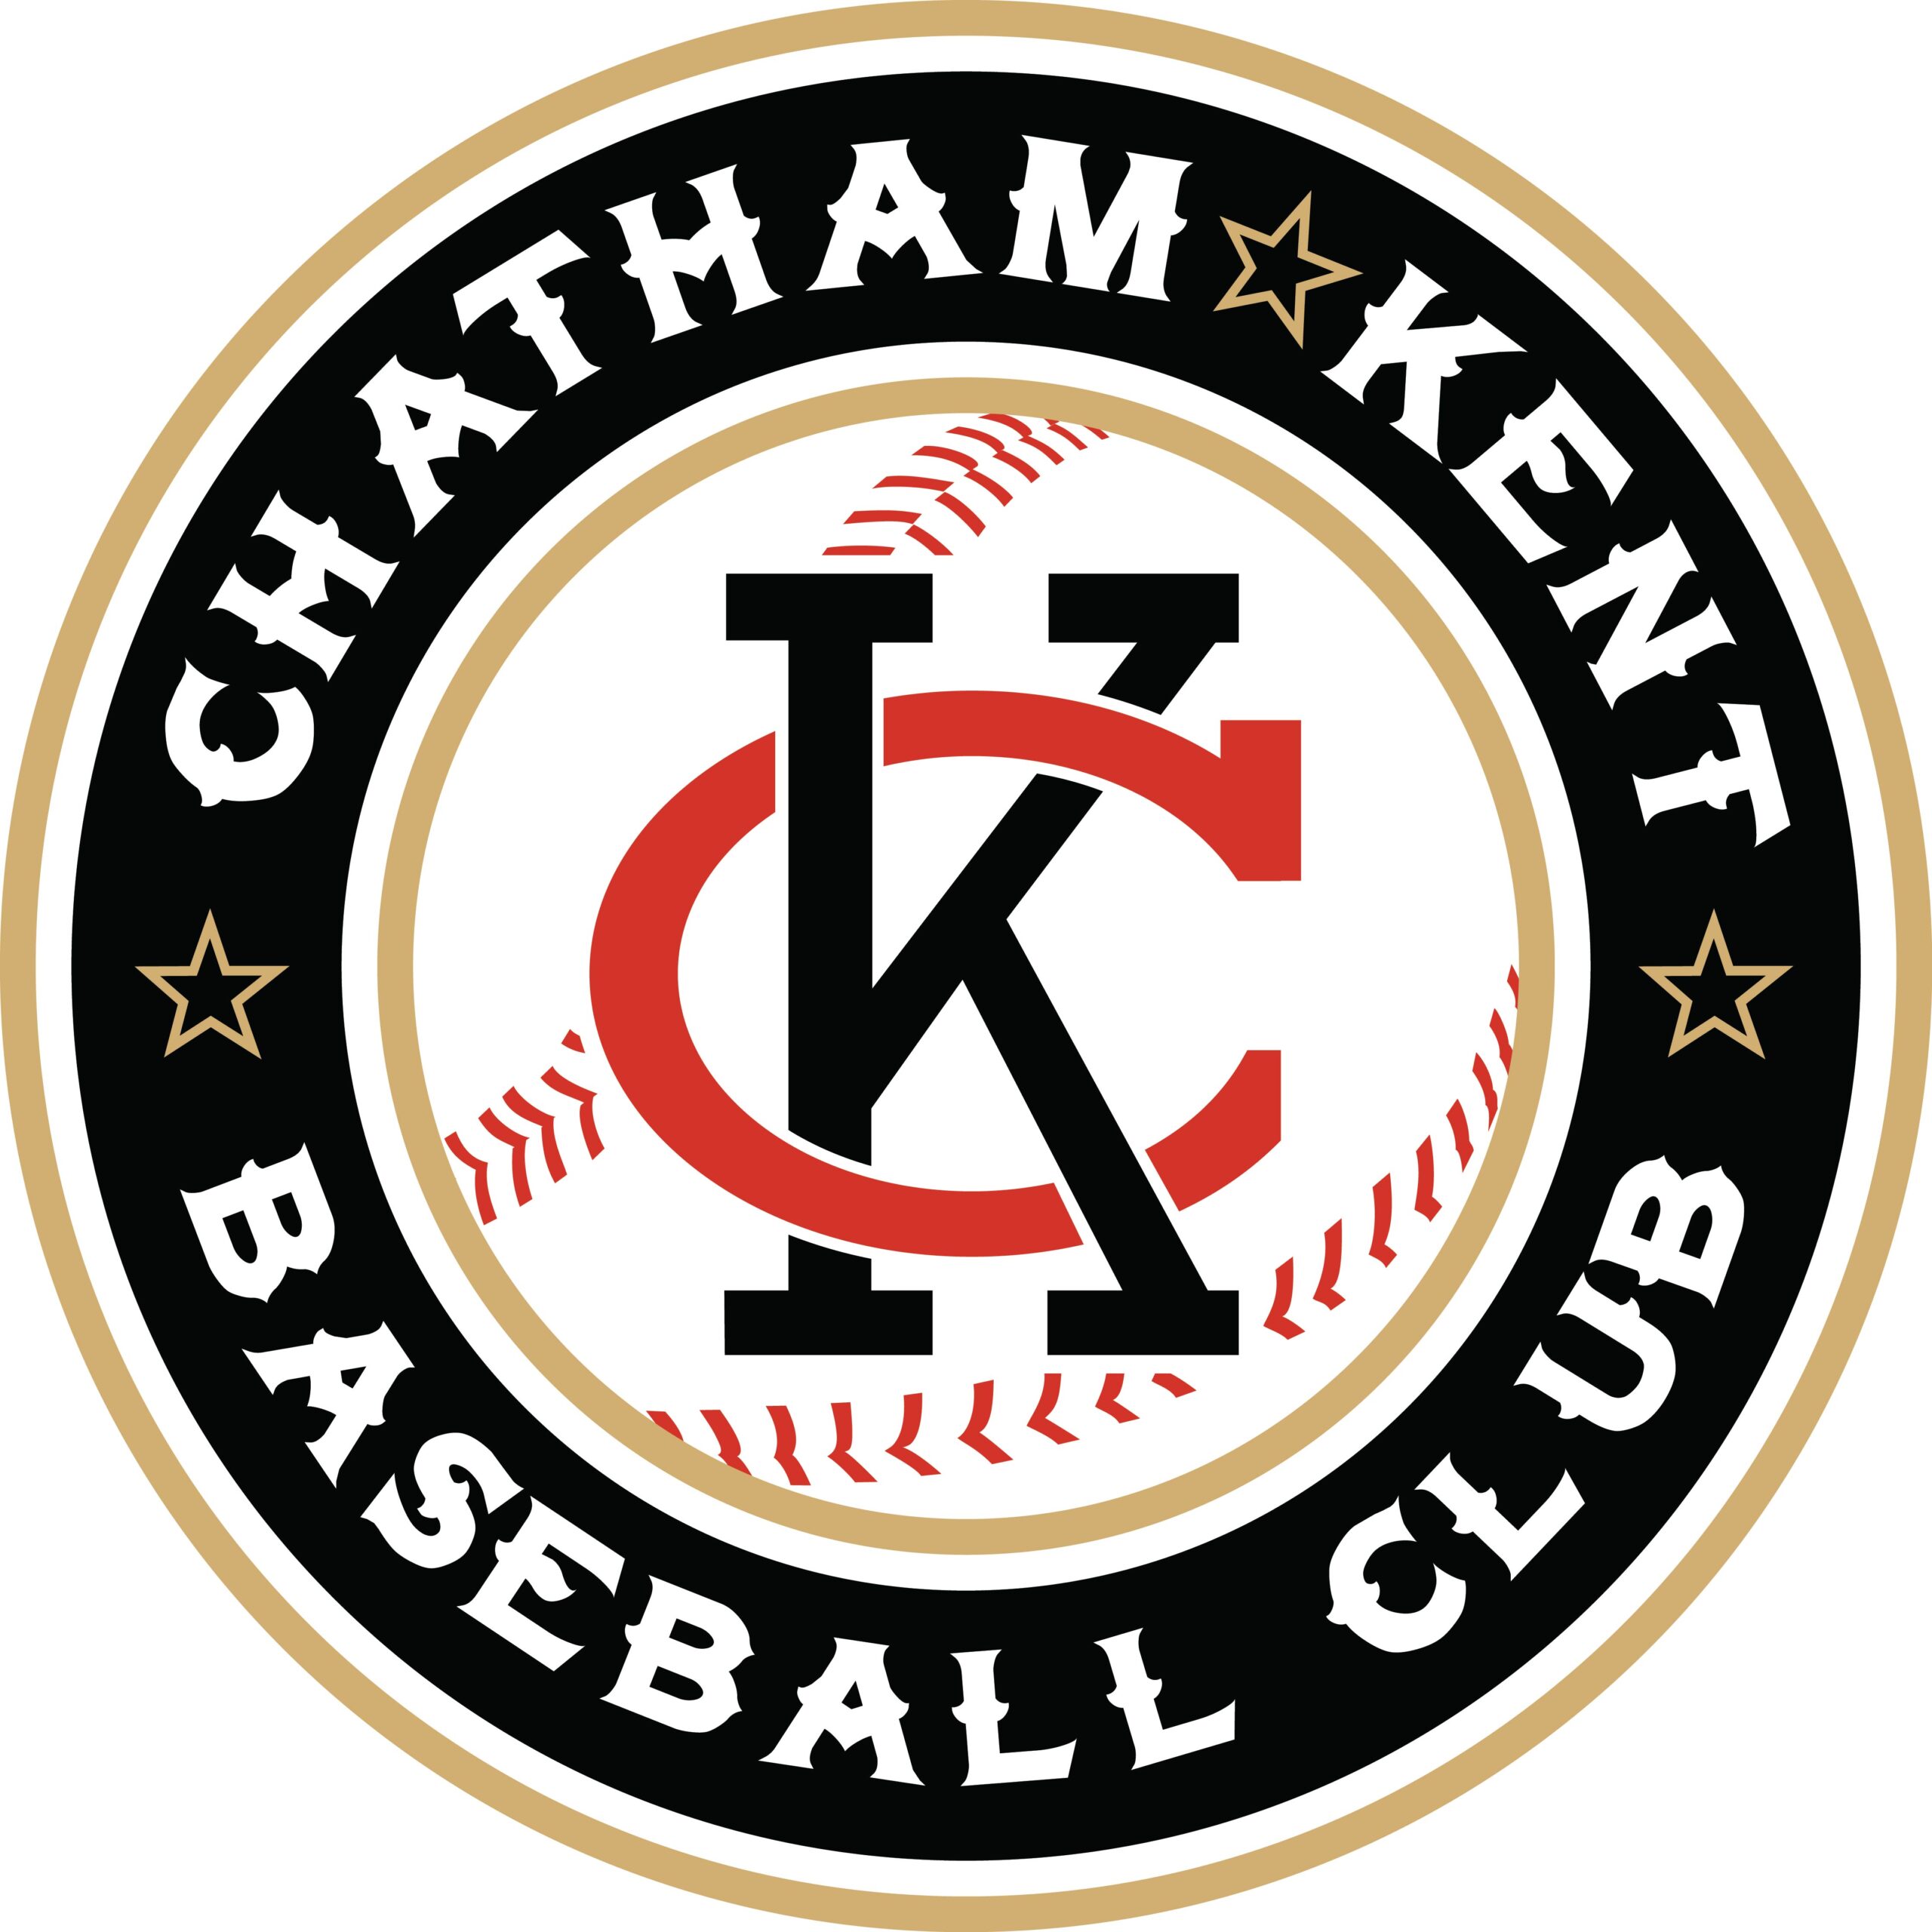 Chatham Kent Baseball Club